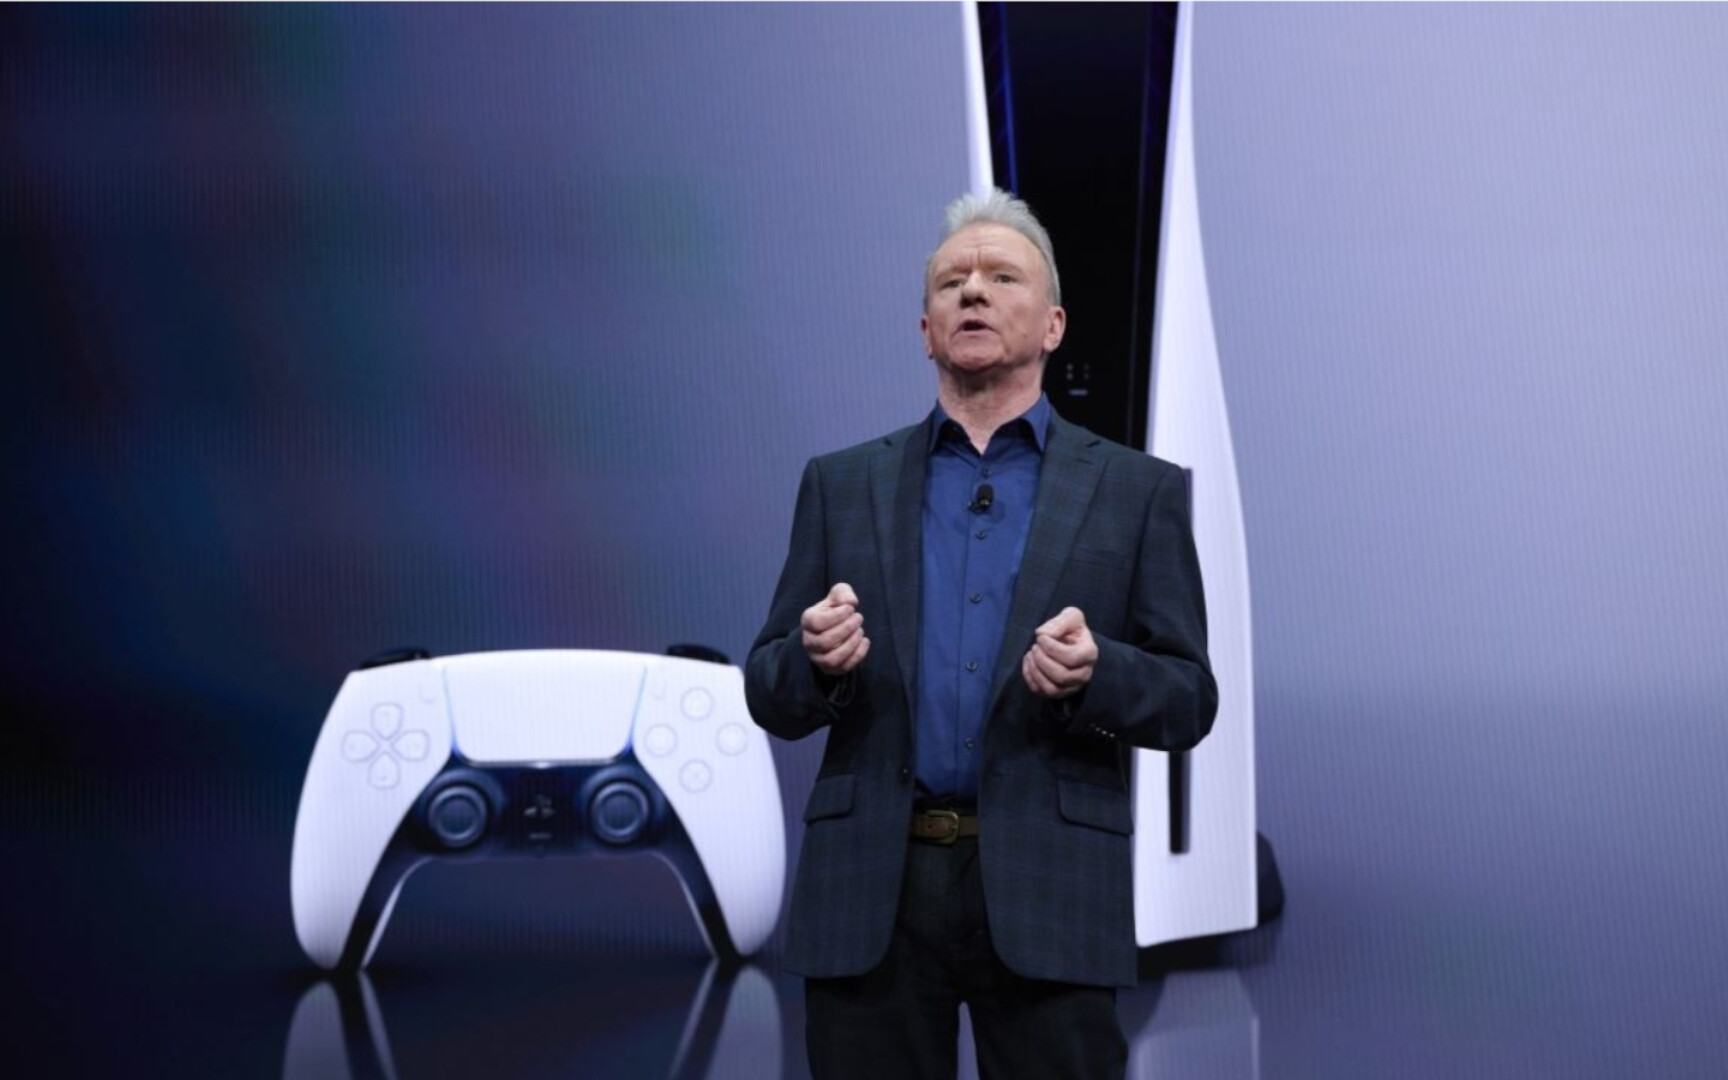 La PlayStation 5 potrebbe essere il più grande successo nella storia delle console Sony.  Jim Ryan parla apertamente di PS5